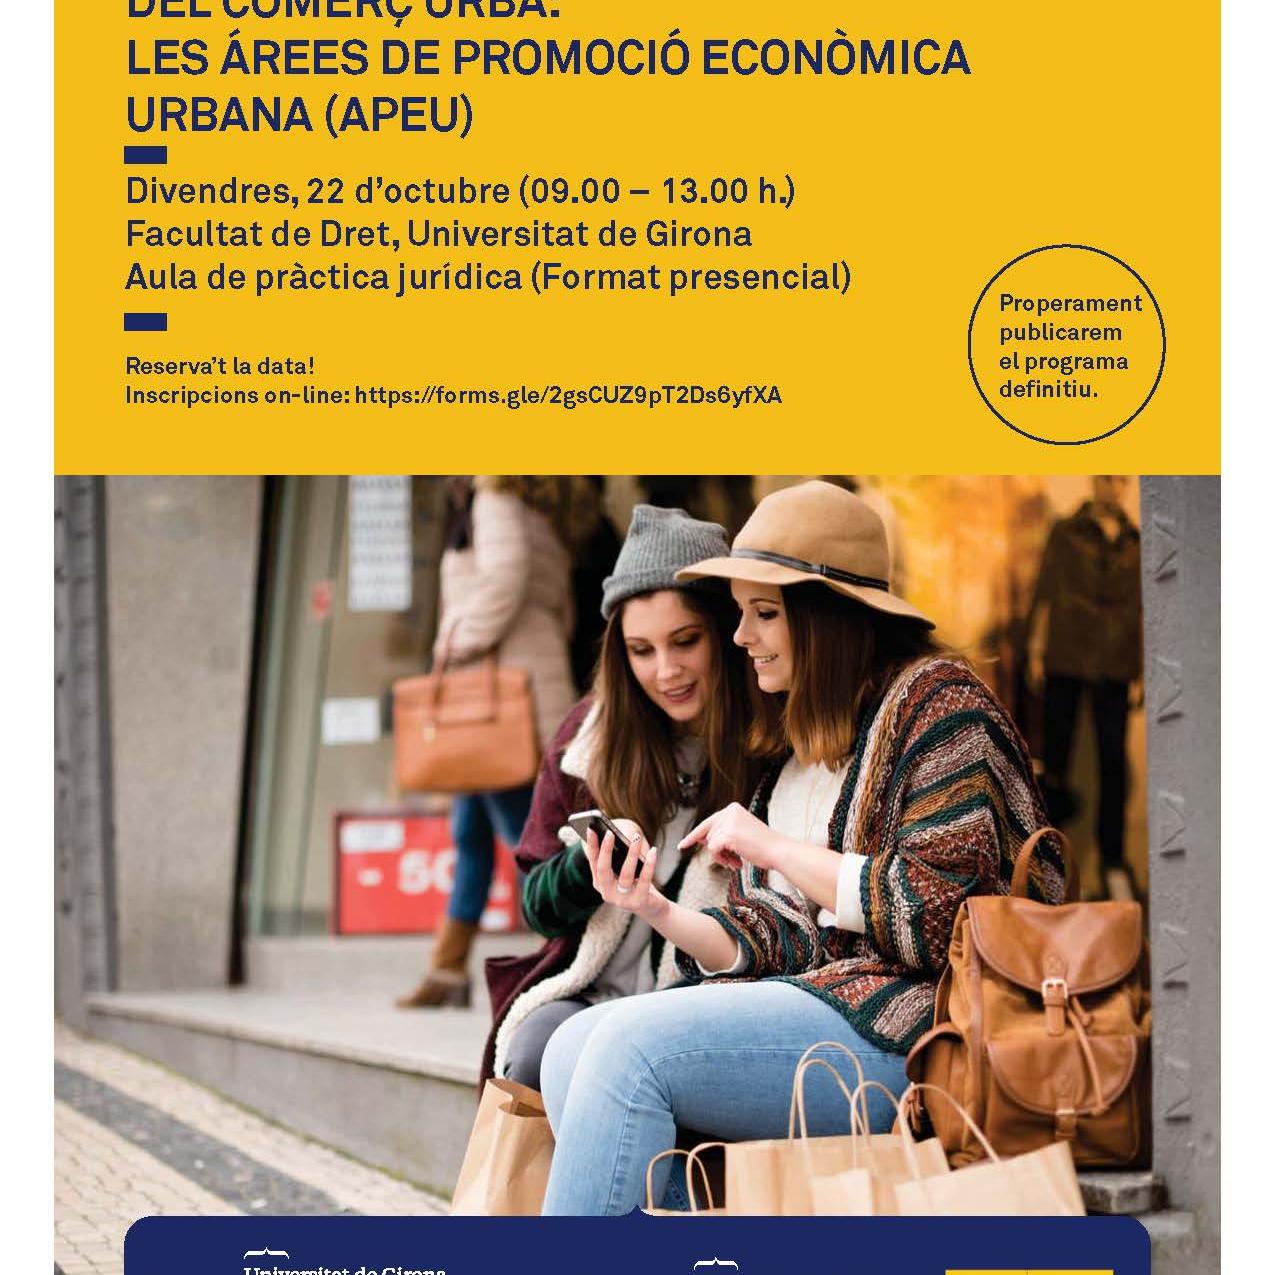 Jornada "Un nou instrument per a la reactivació del comerç urbà: les àrees de promoció econòmica urbana (APEU)"